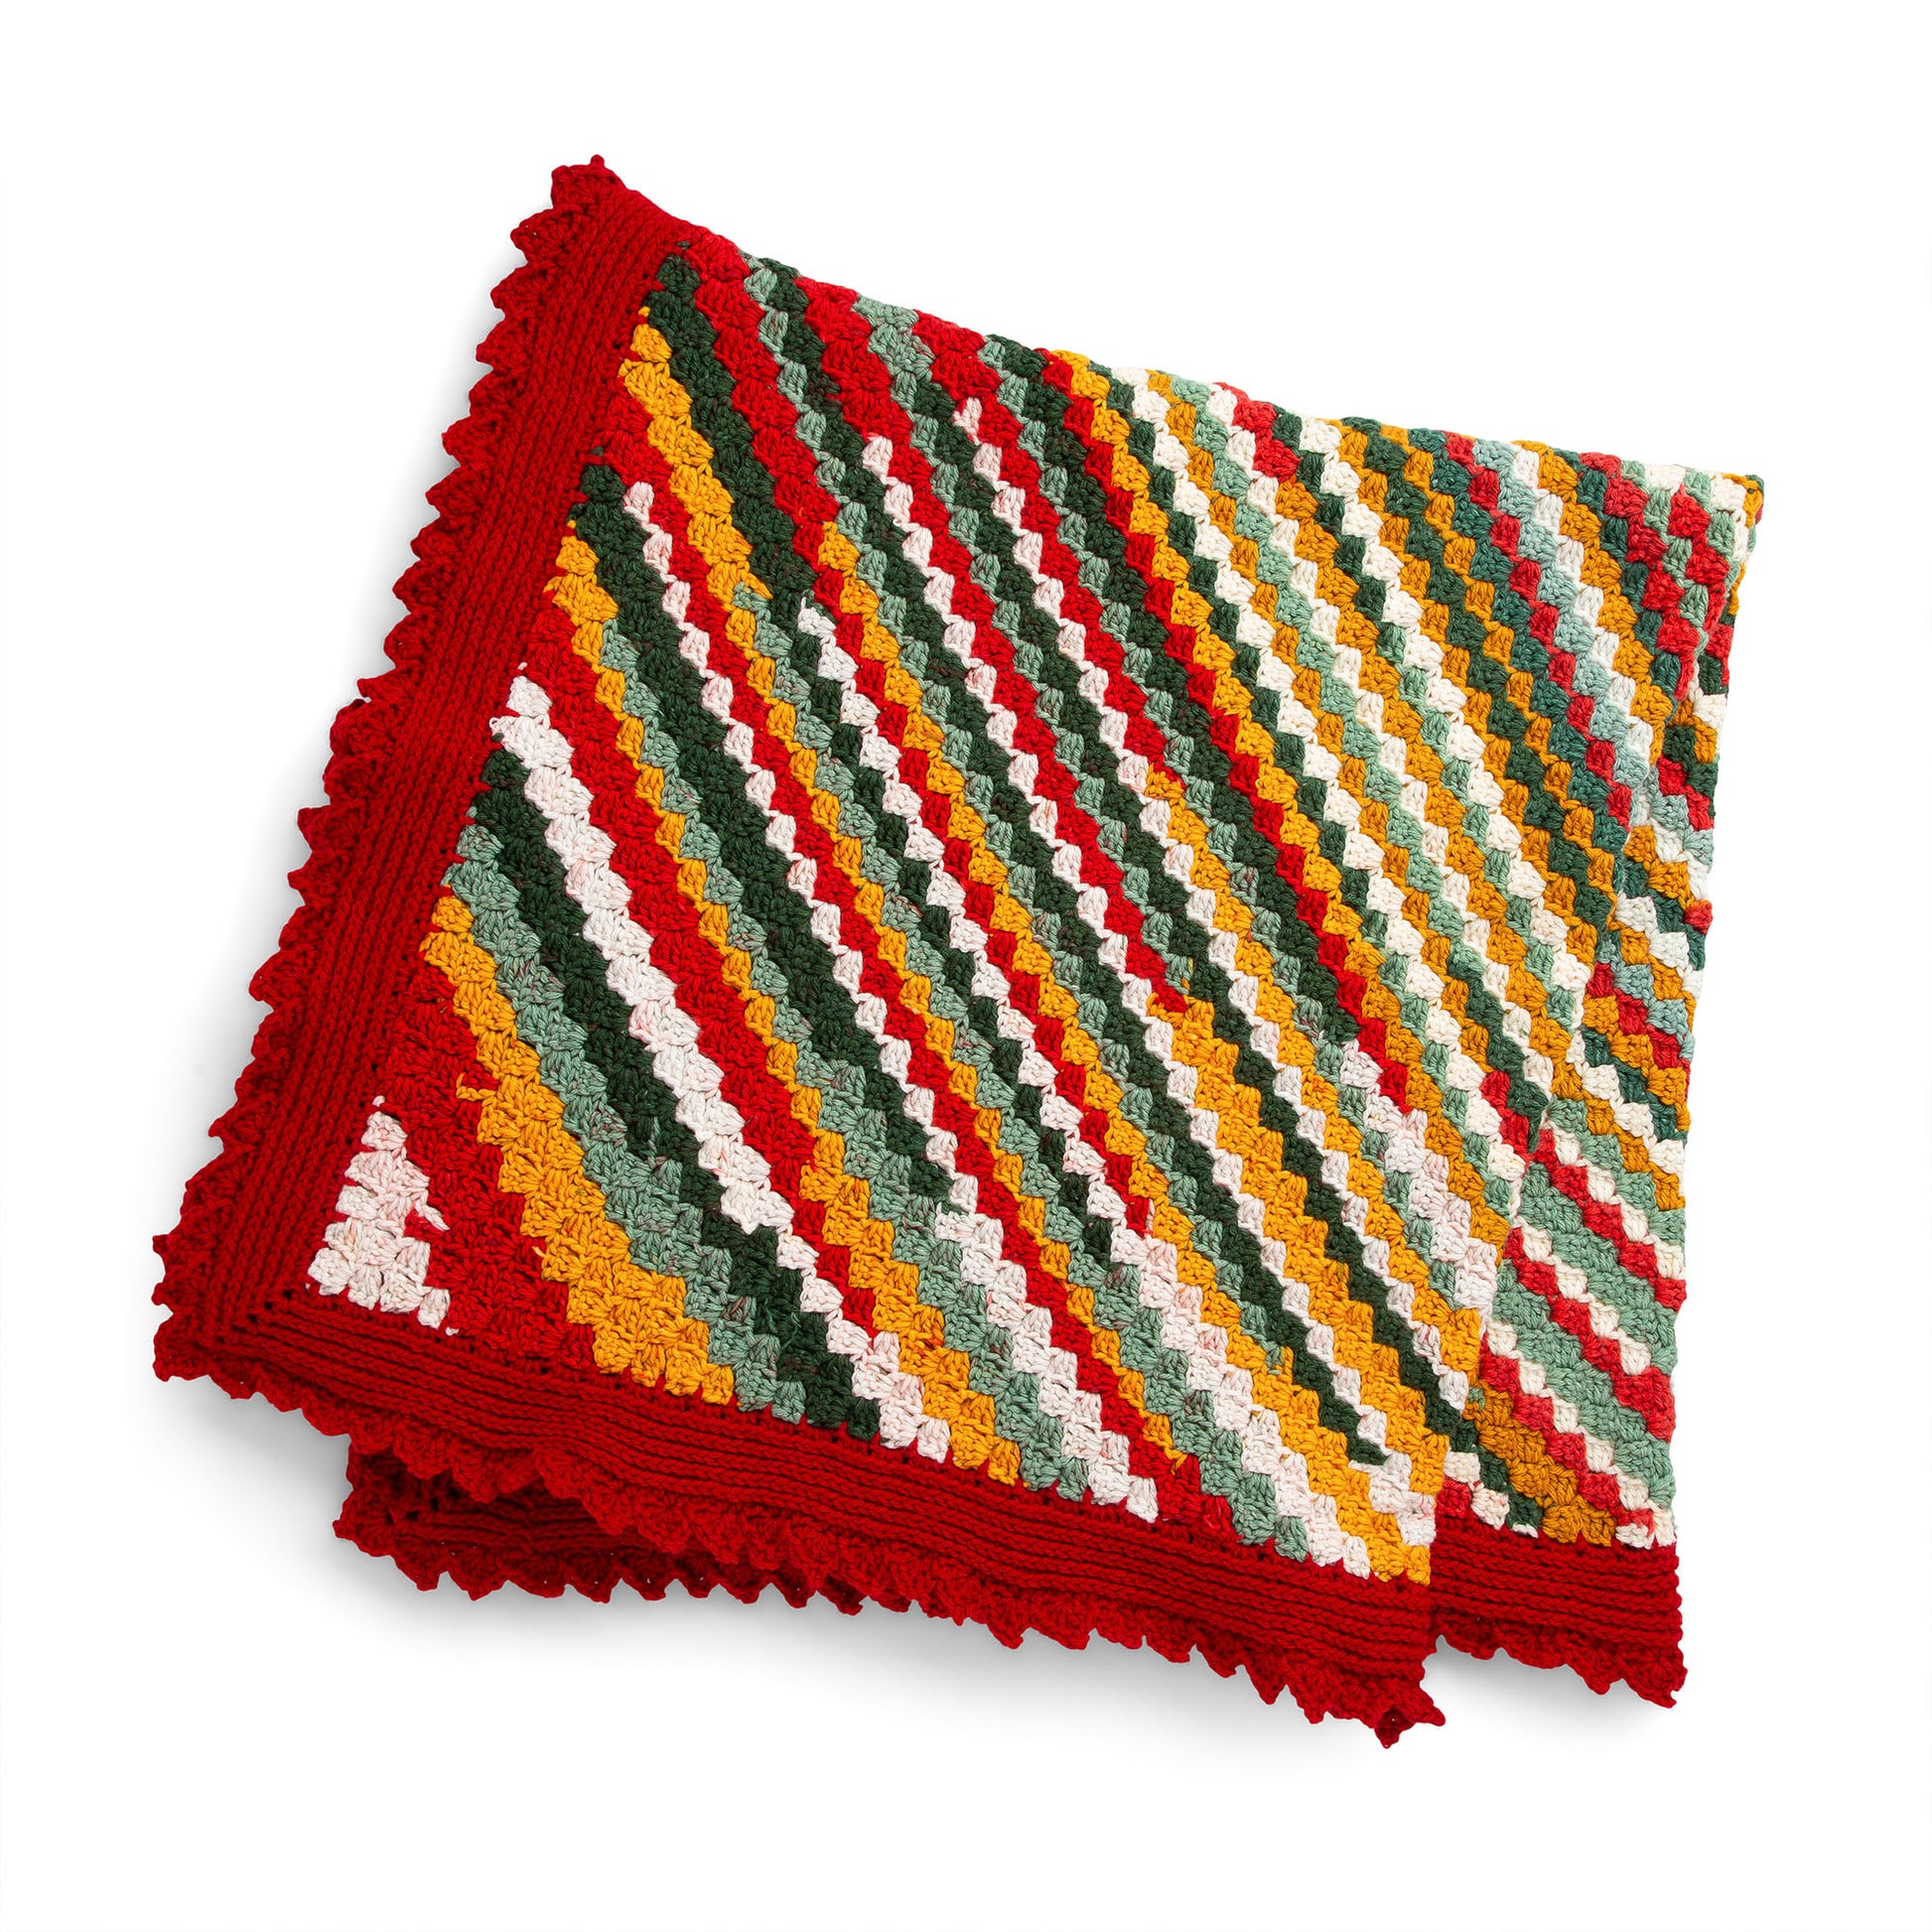 Free Red Heart Crochet Corner-To-Corner Throw Pattern